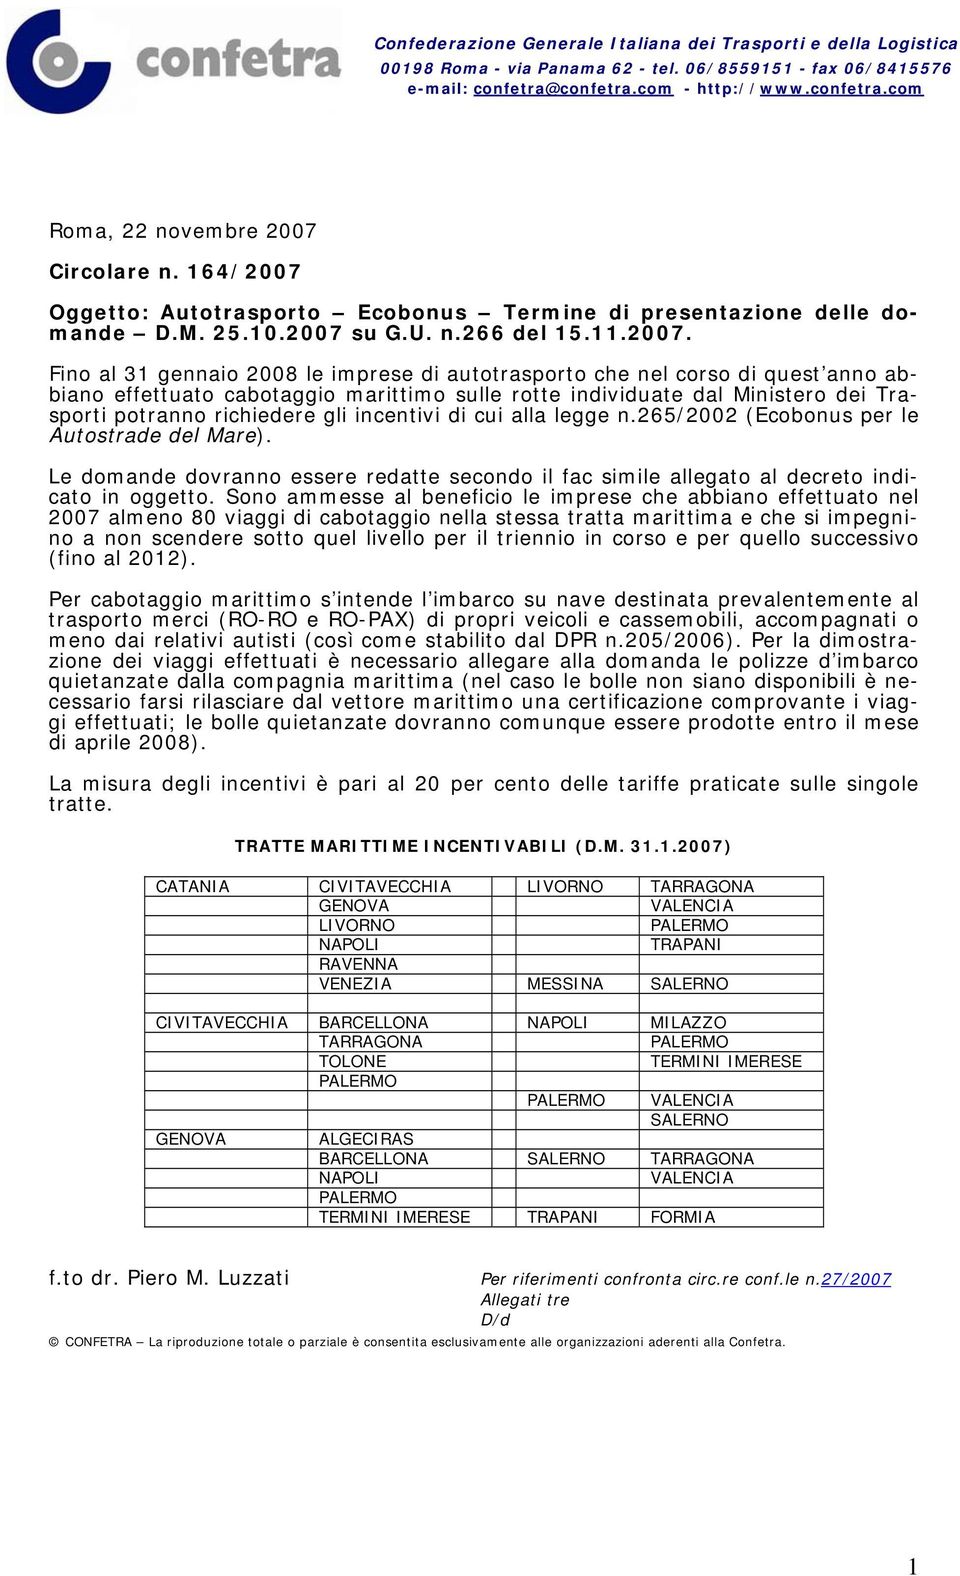 Oggetto: Autotrasporto Ecobonus Termine di presentazione delle domande D.M. 25.10.2007 